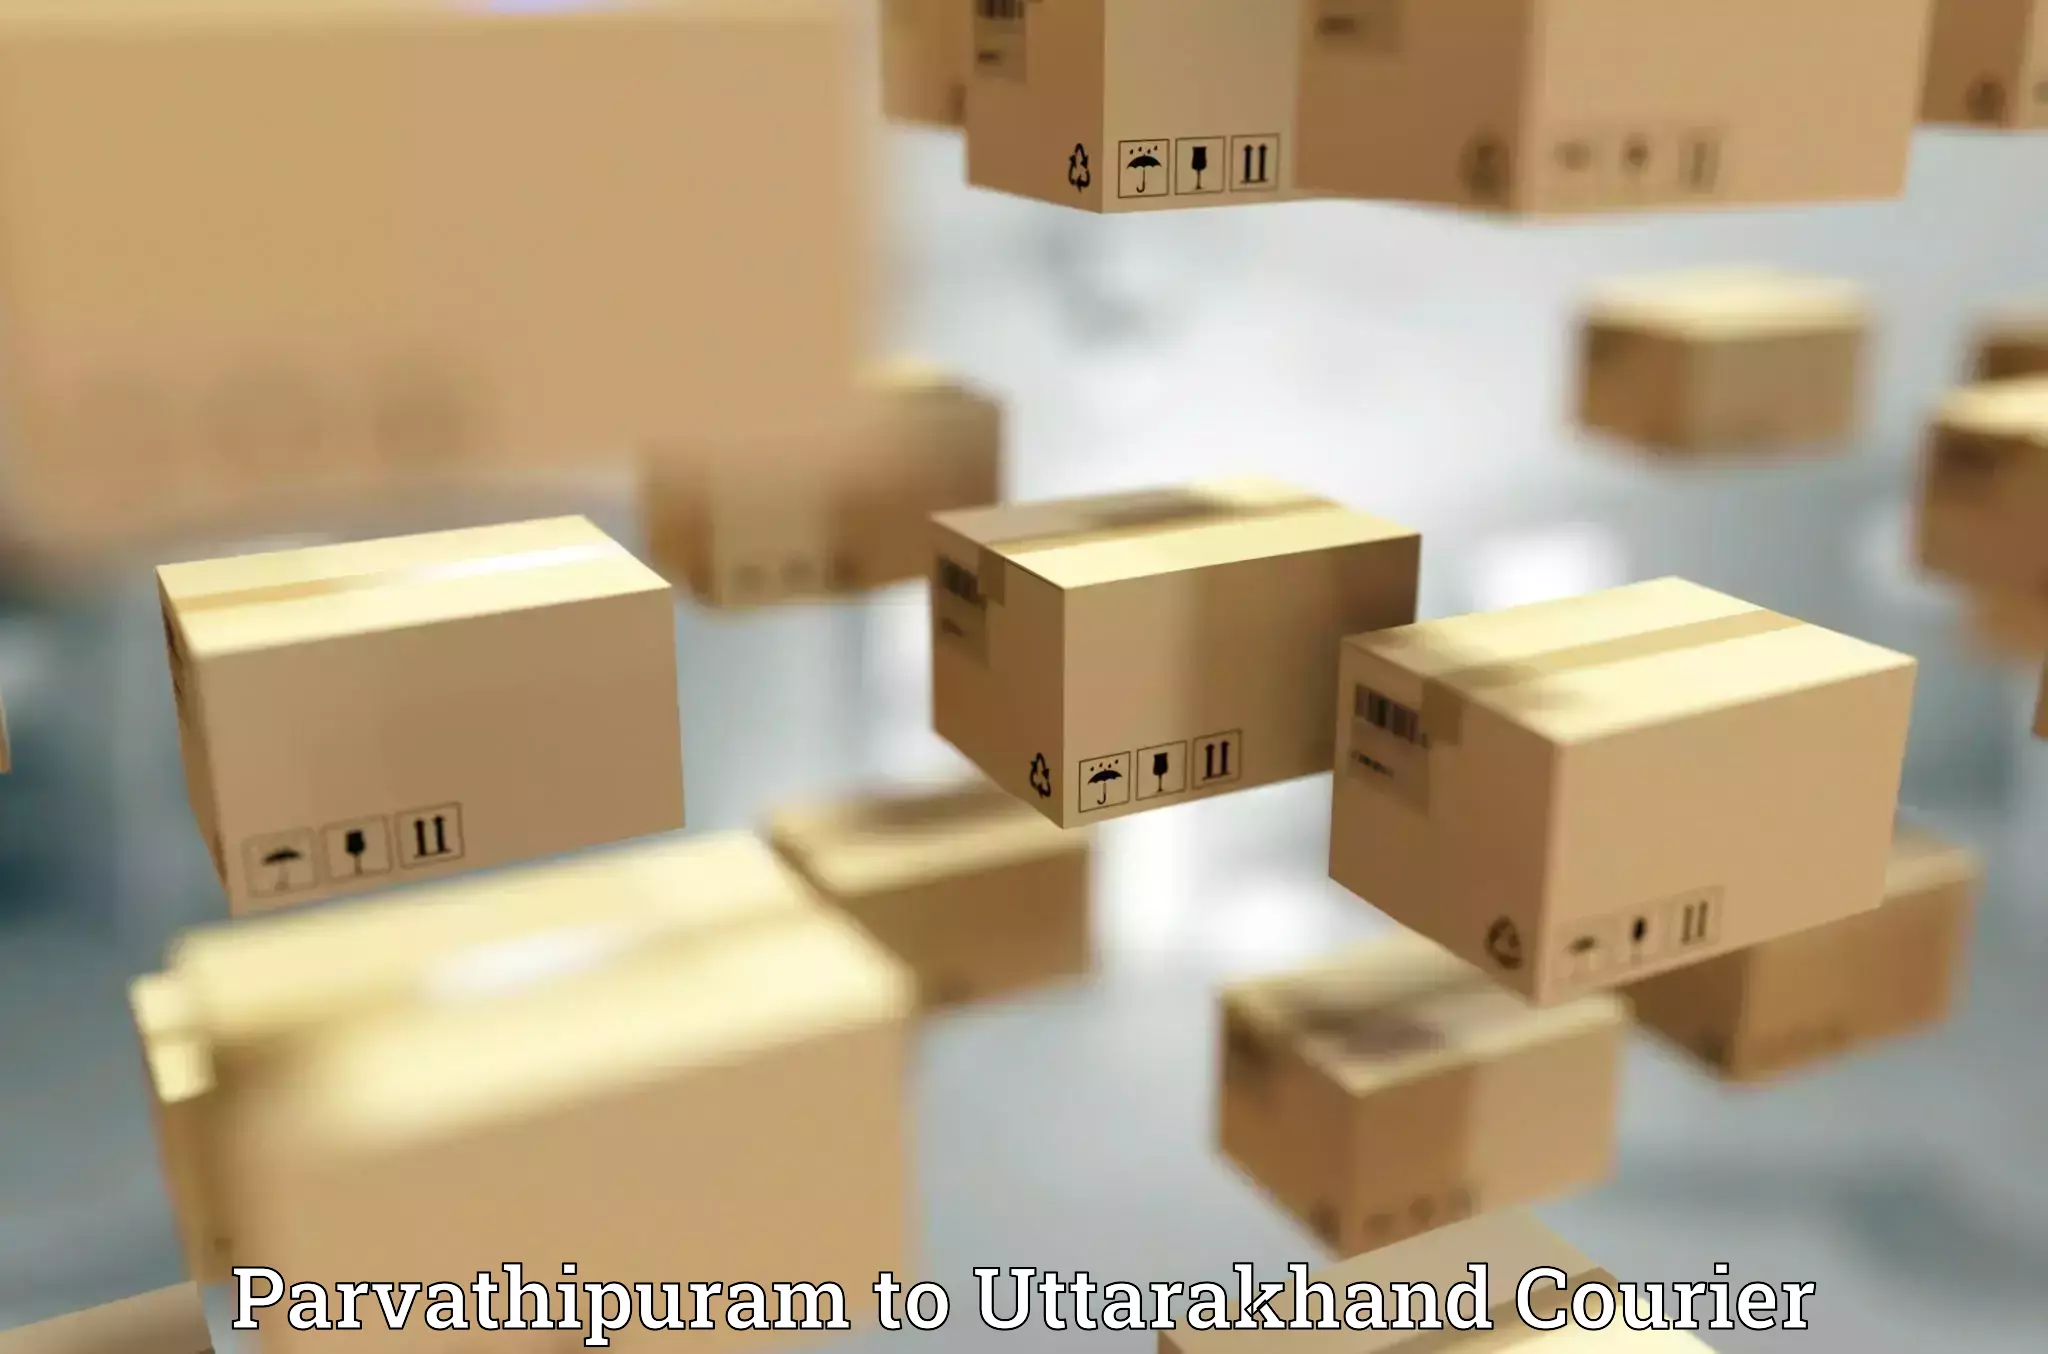 Automated parcel services Parvathipuram to Uttarakhand